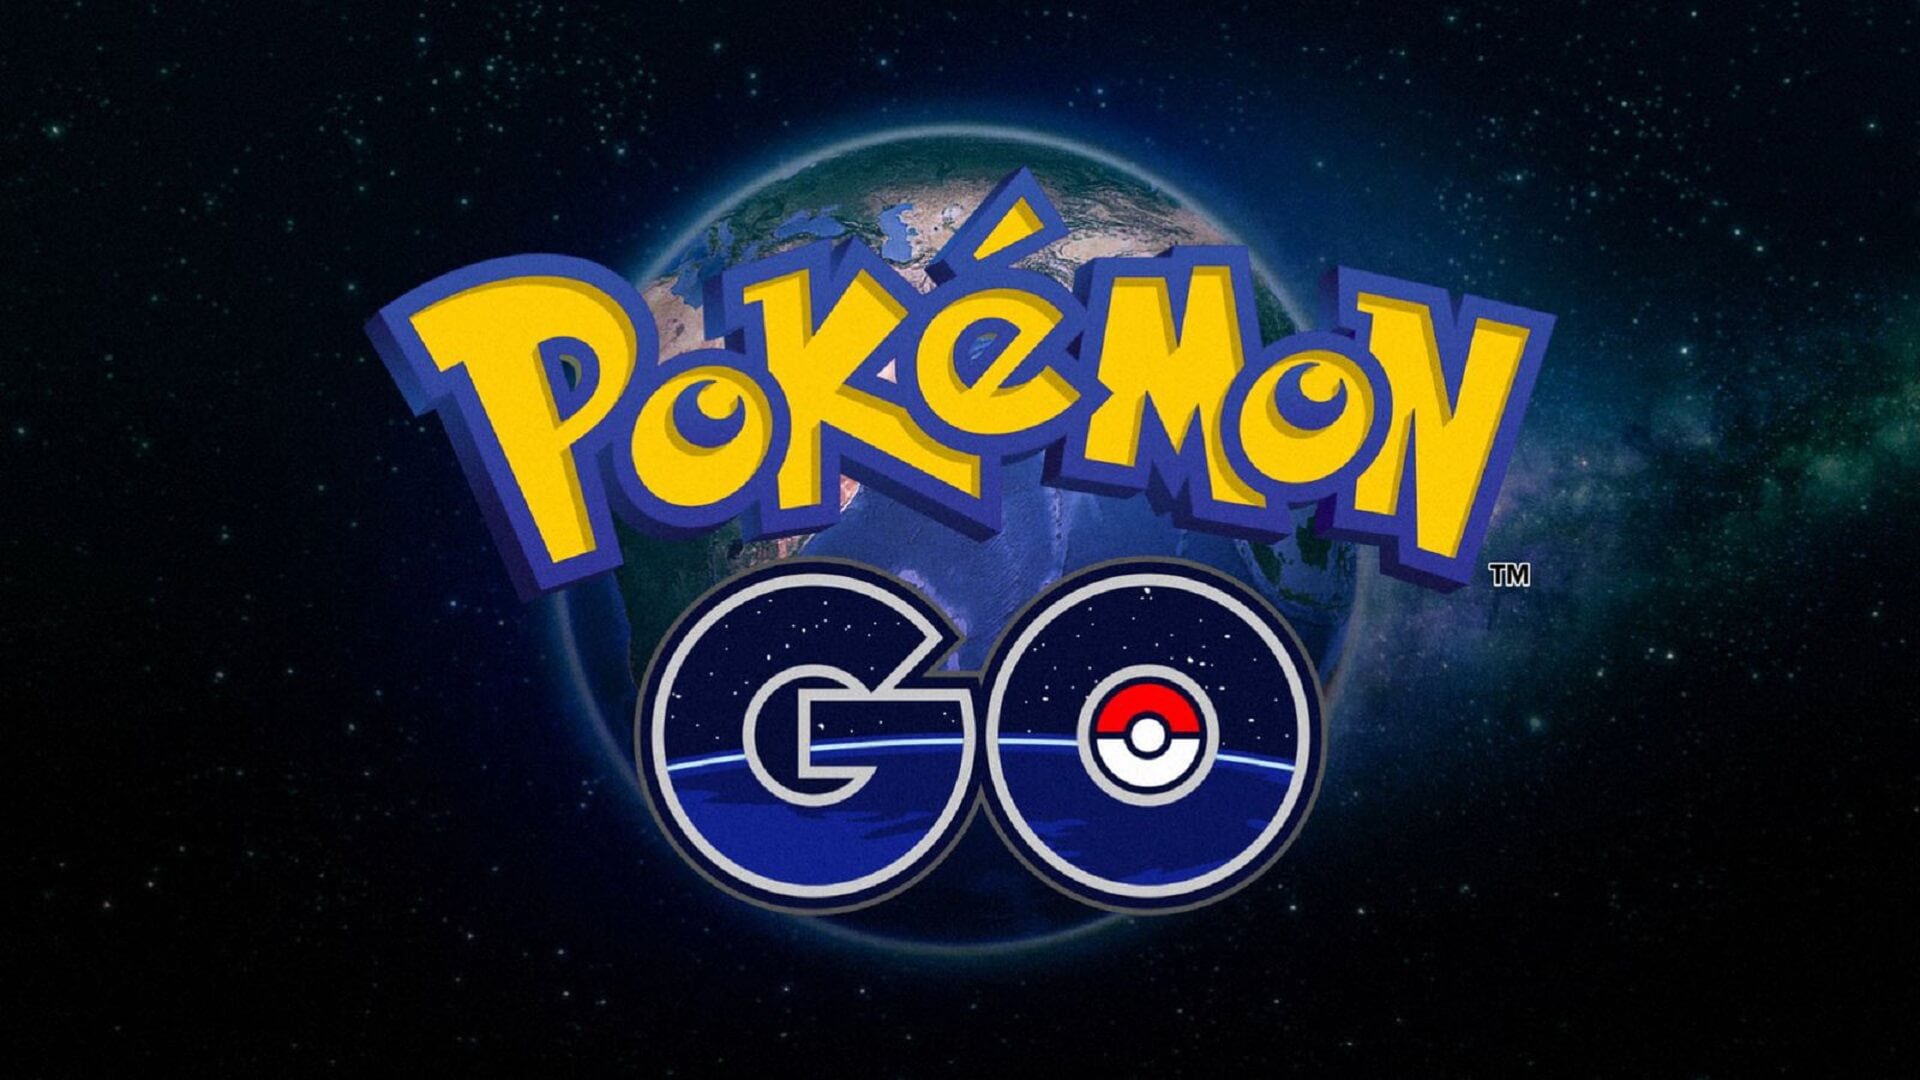 pokémon go-logo